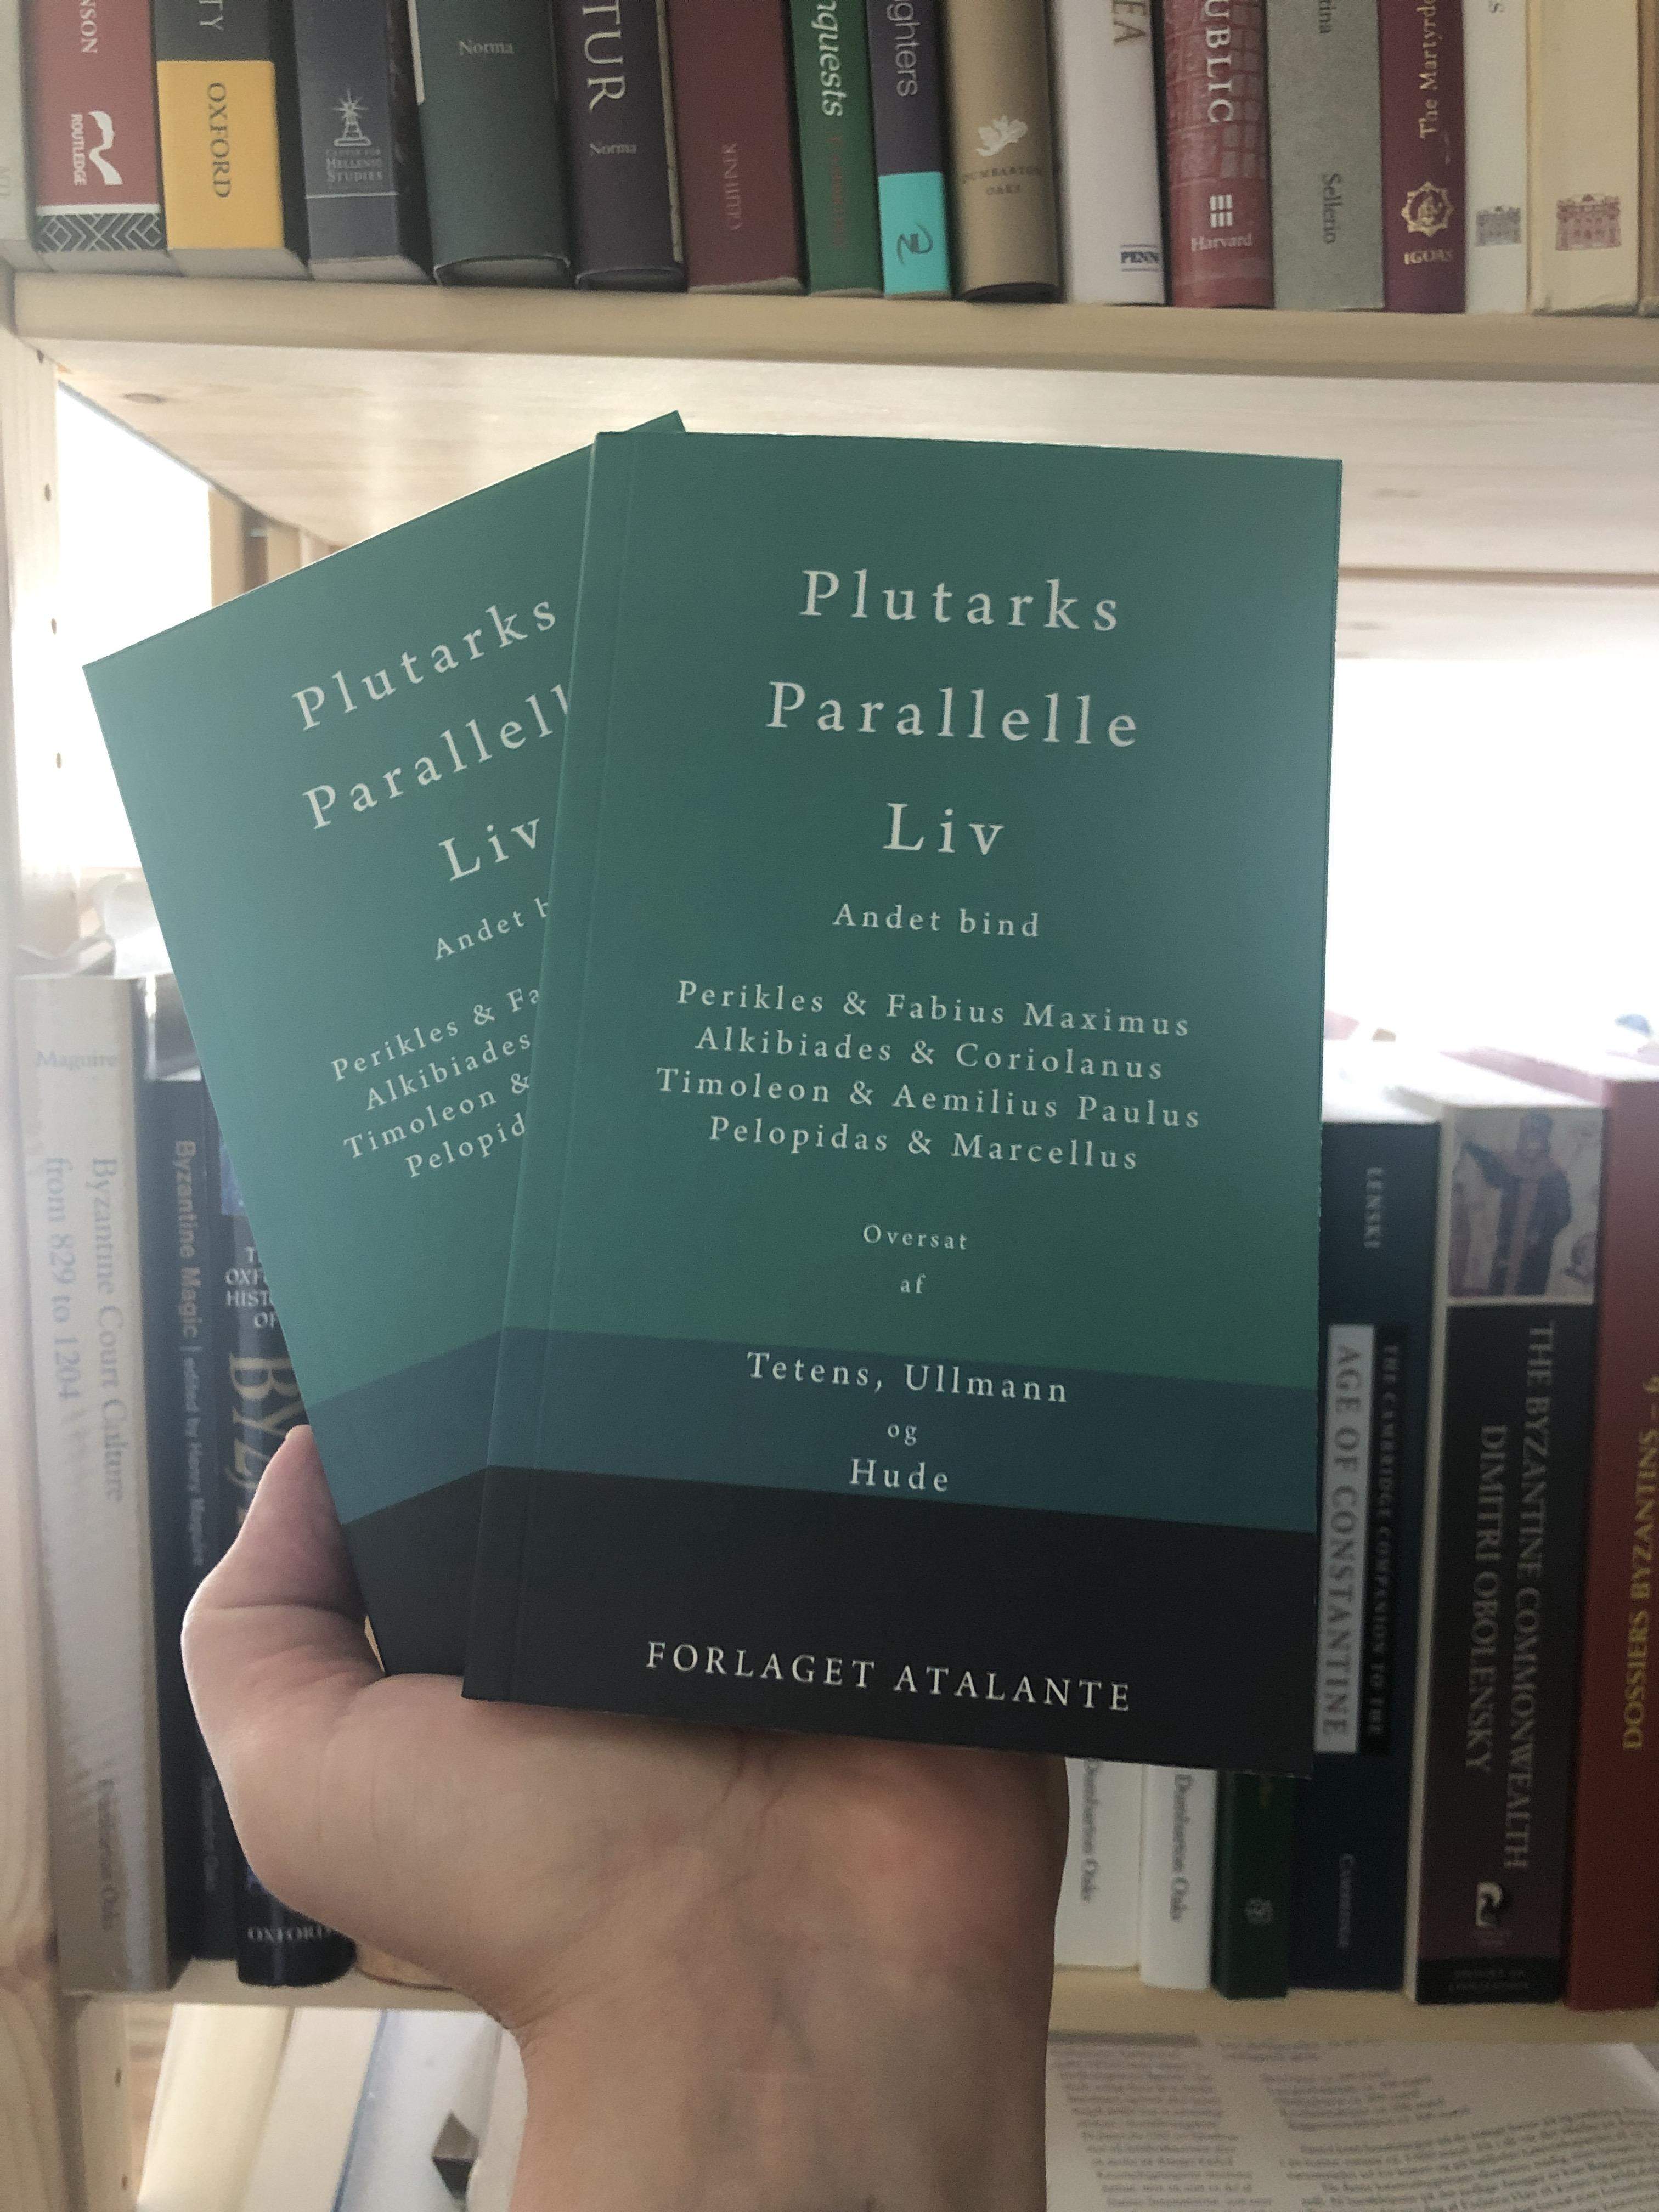 Plutarks Parallelle Liv - 5